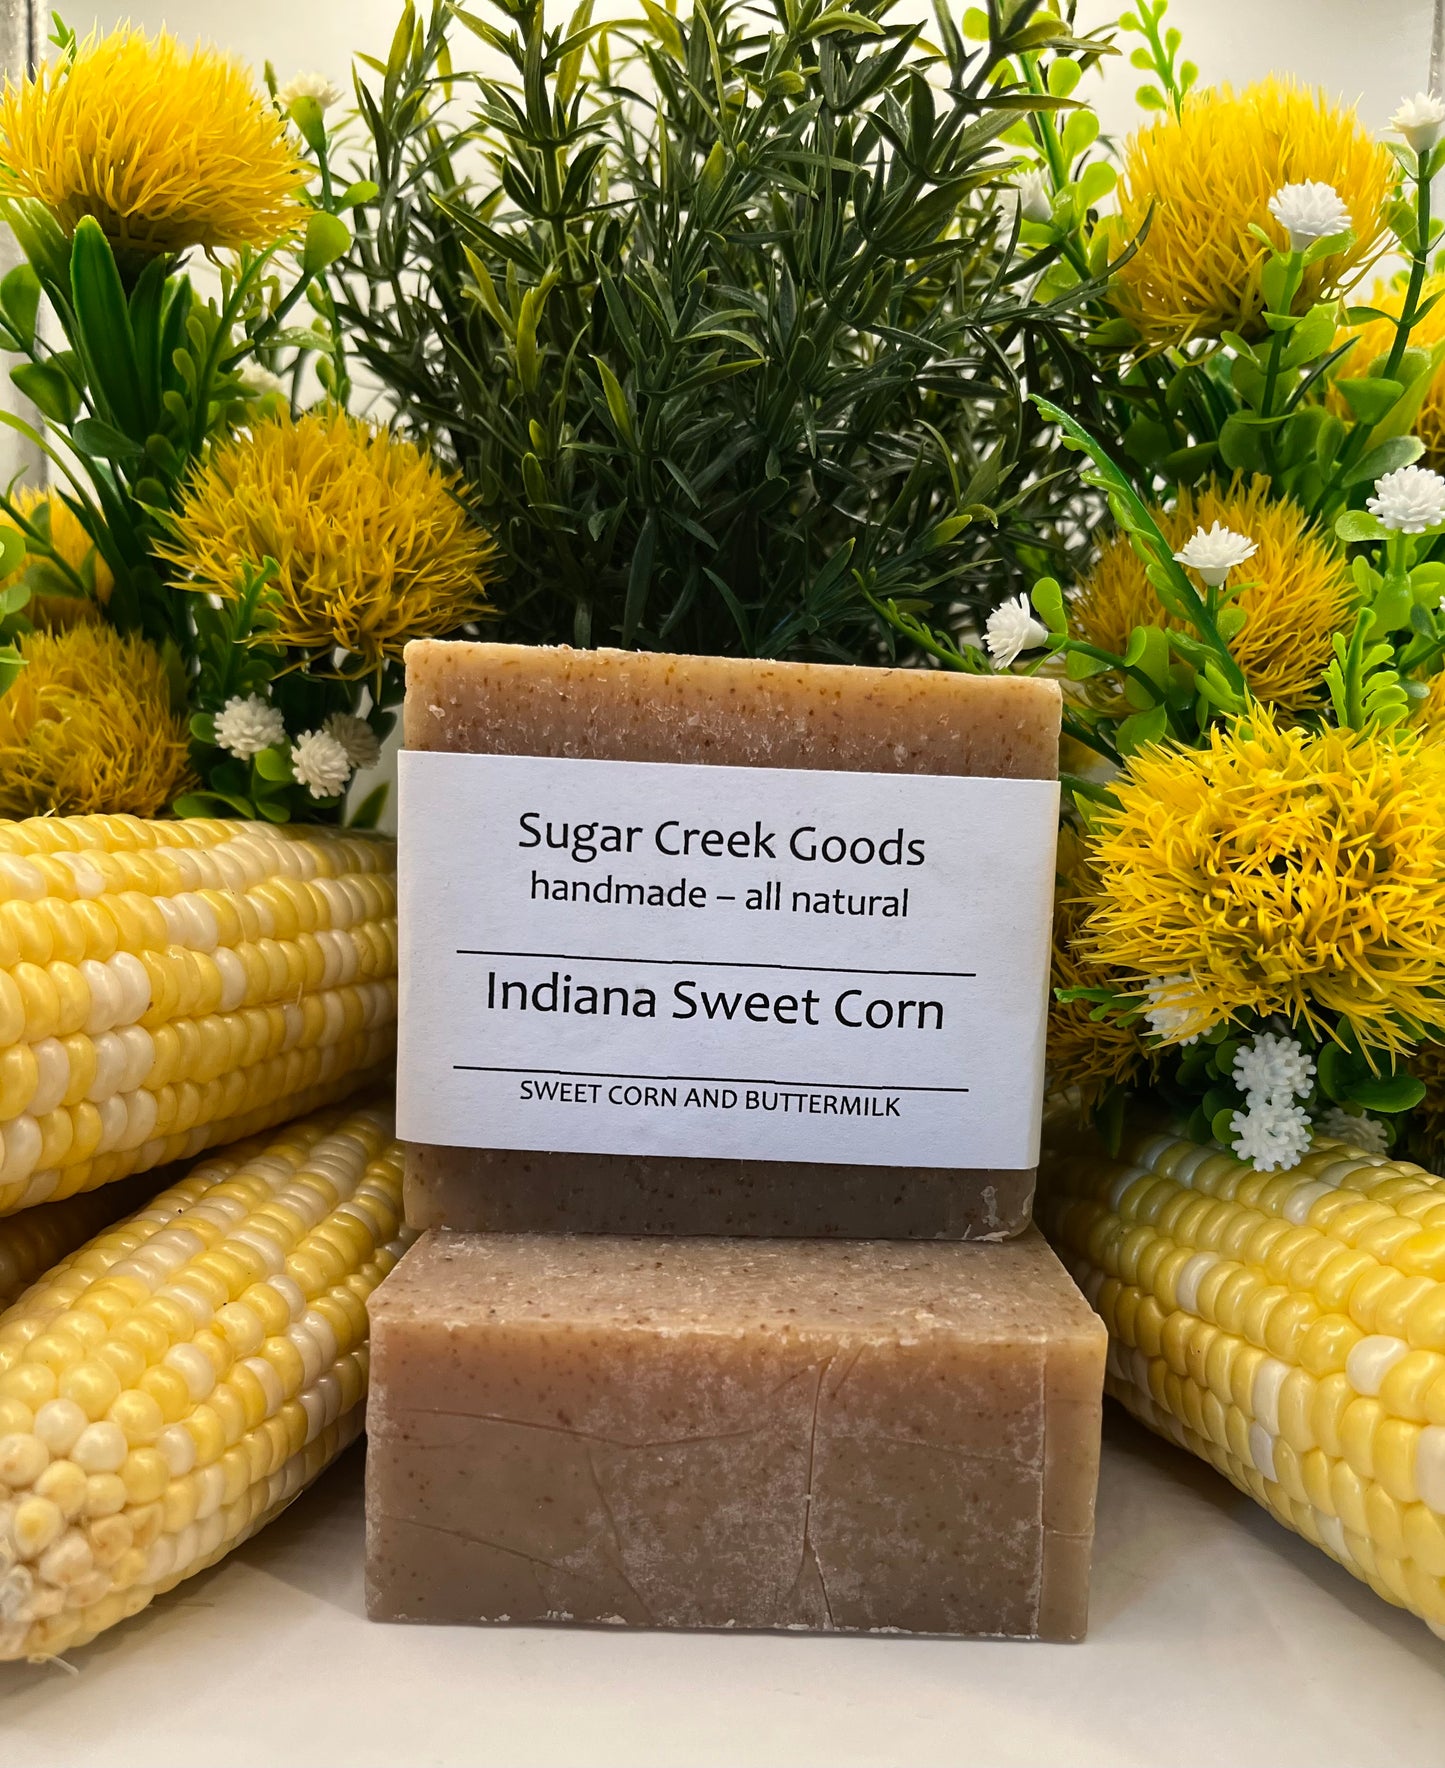 Indiana Sweet Corn